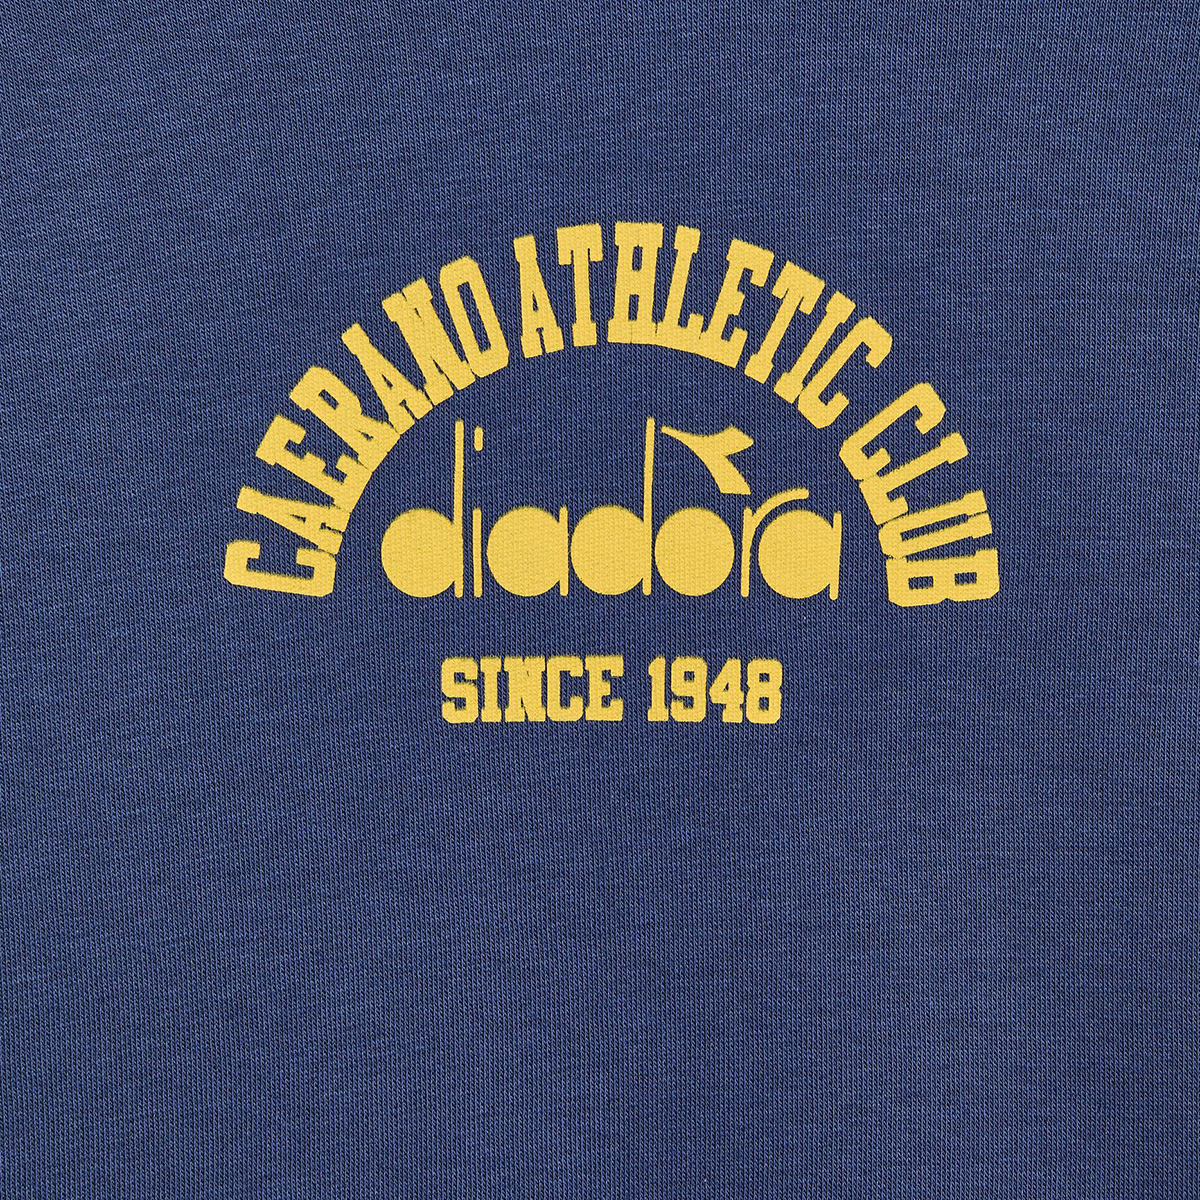 Diadora 1984 Athletic Club Hoodie, , large image number null